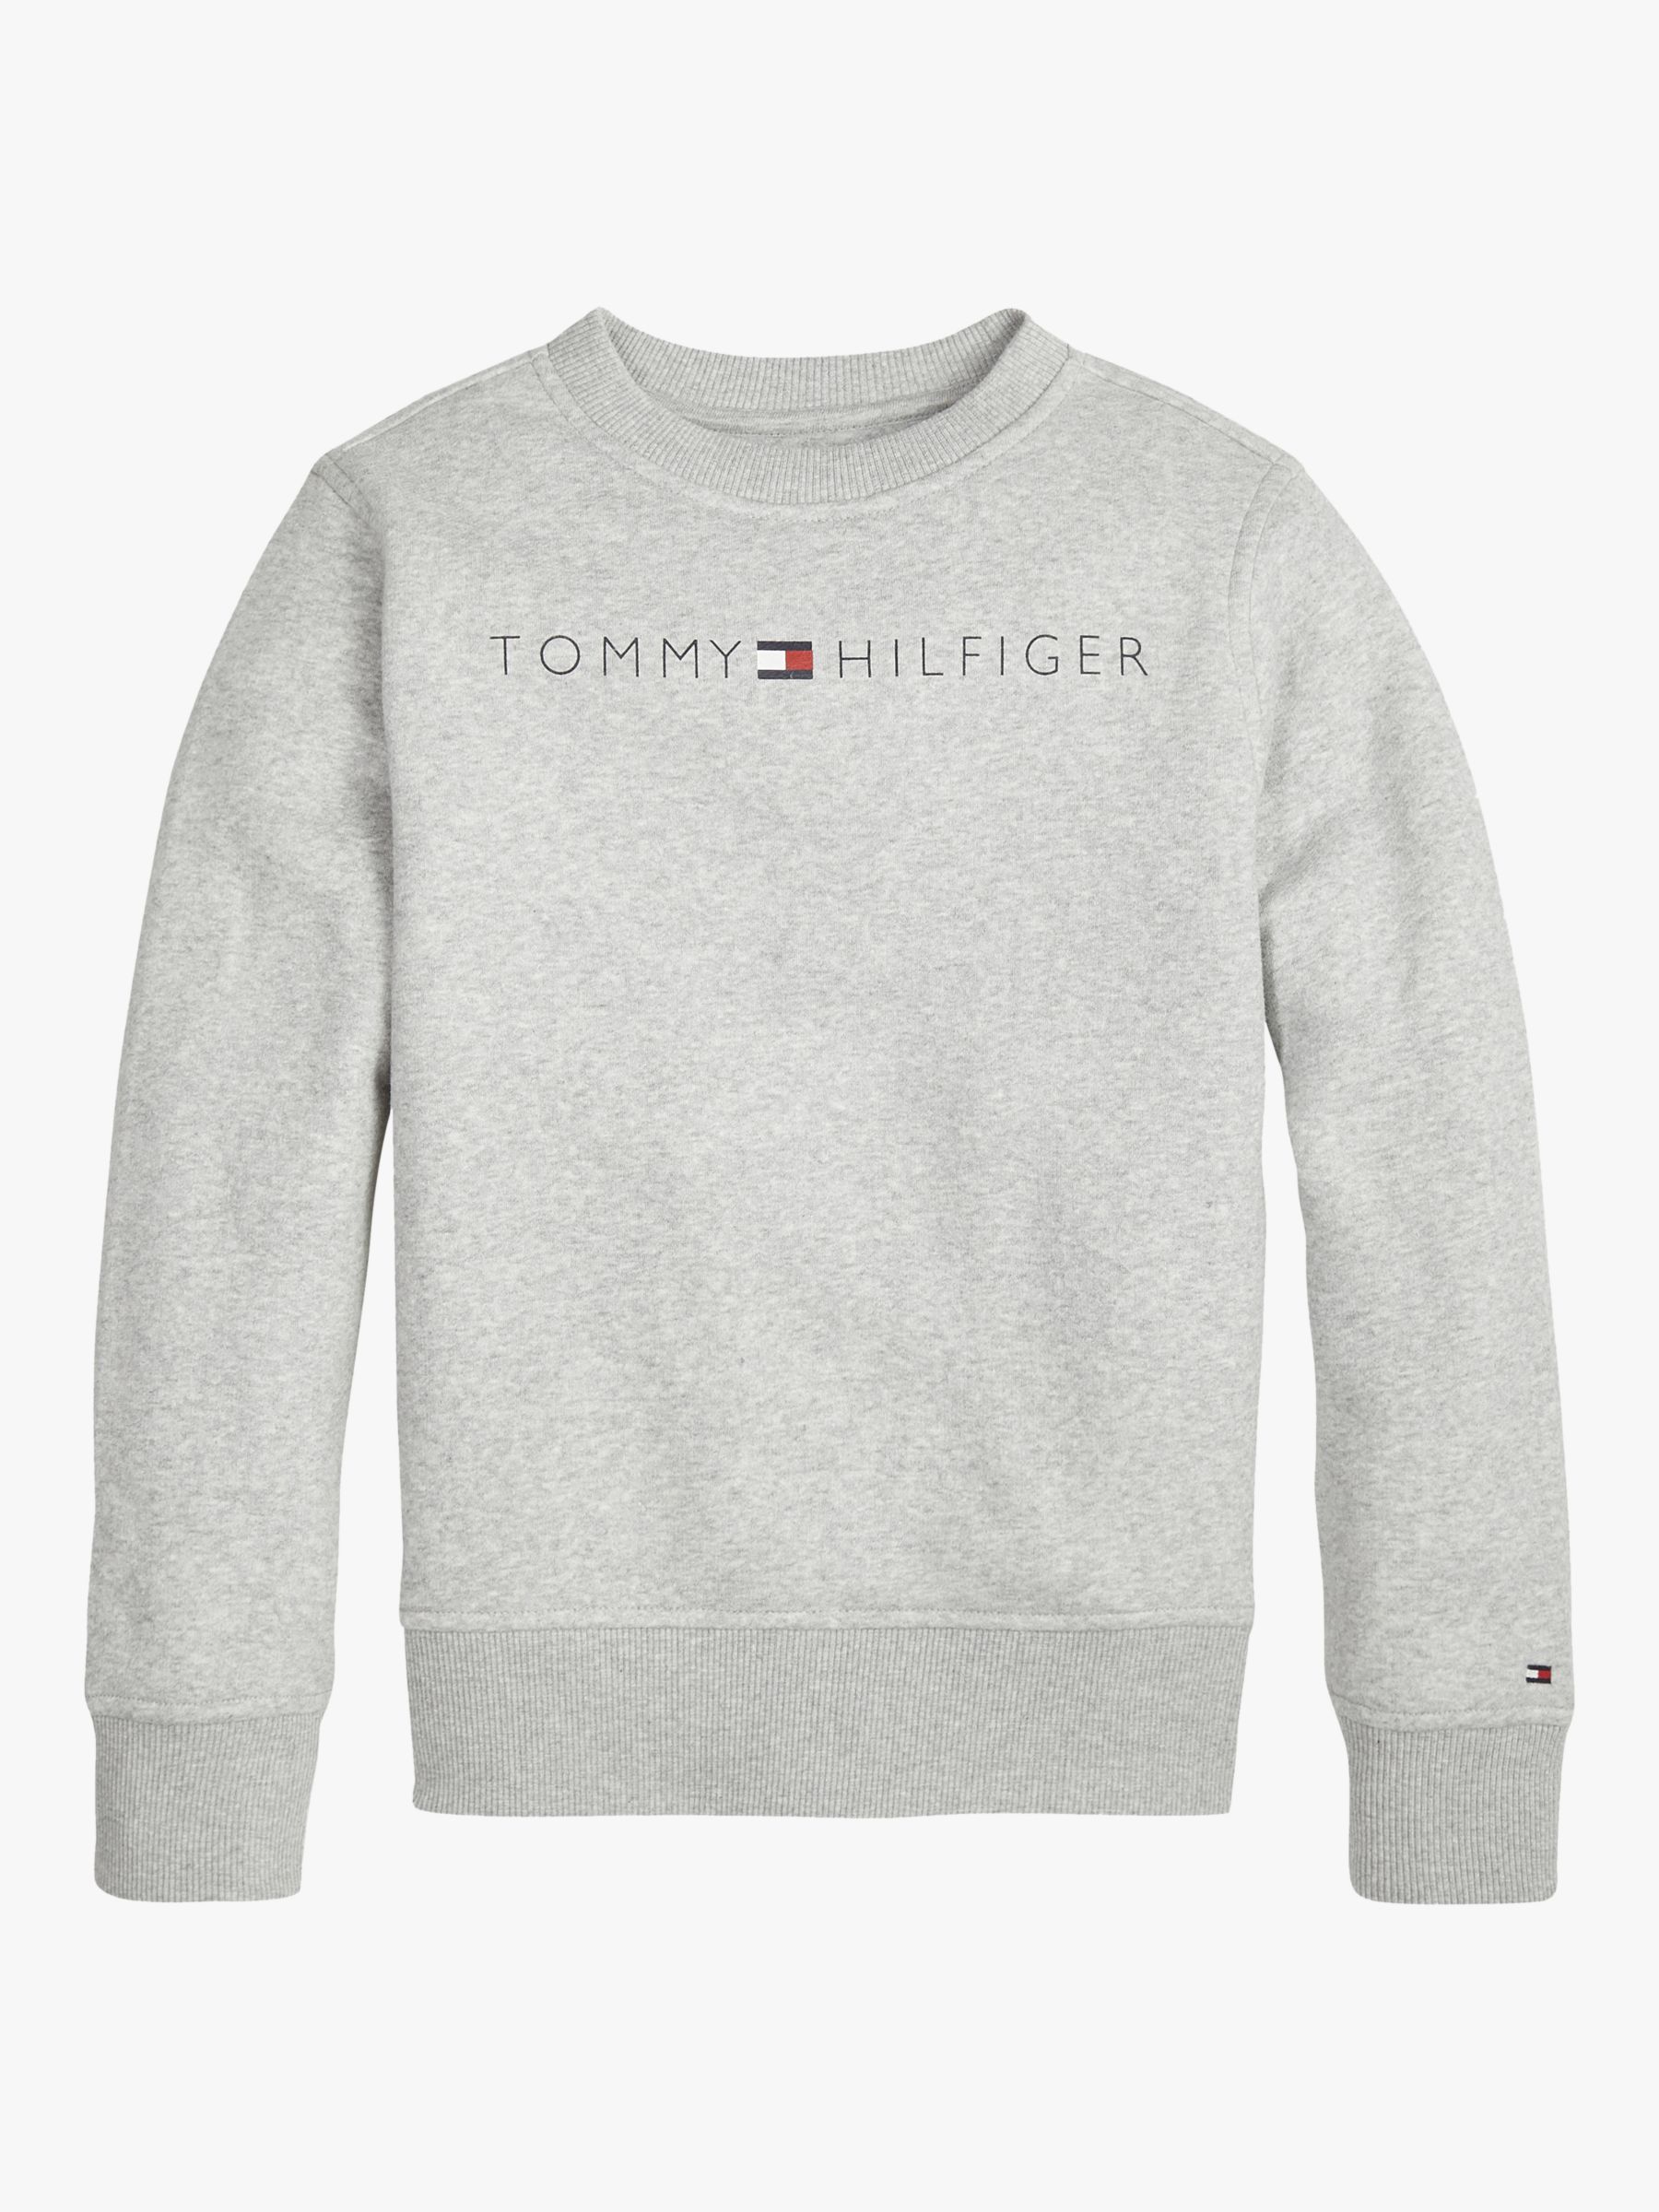 tommy sweatshirt grey